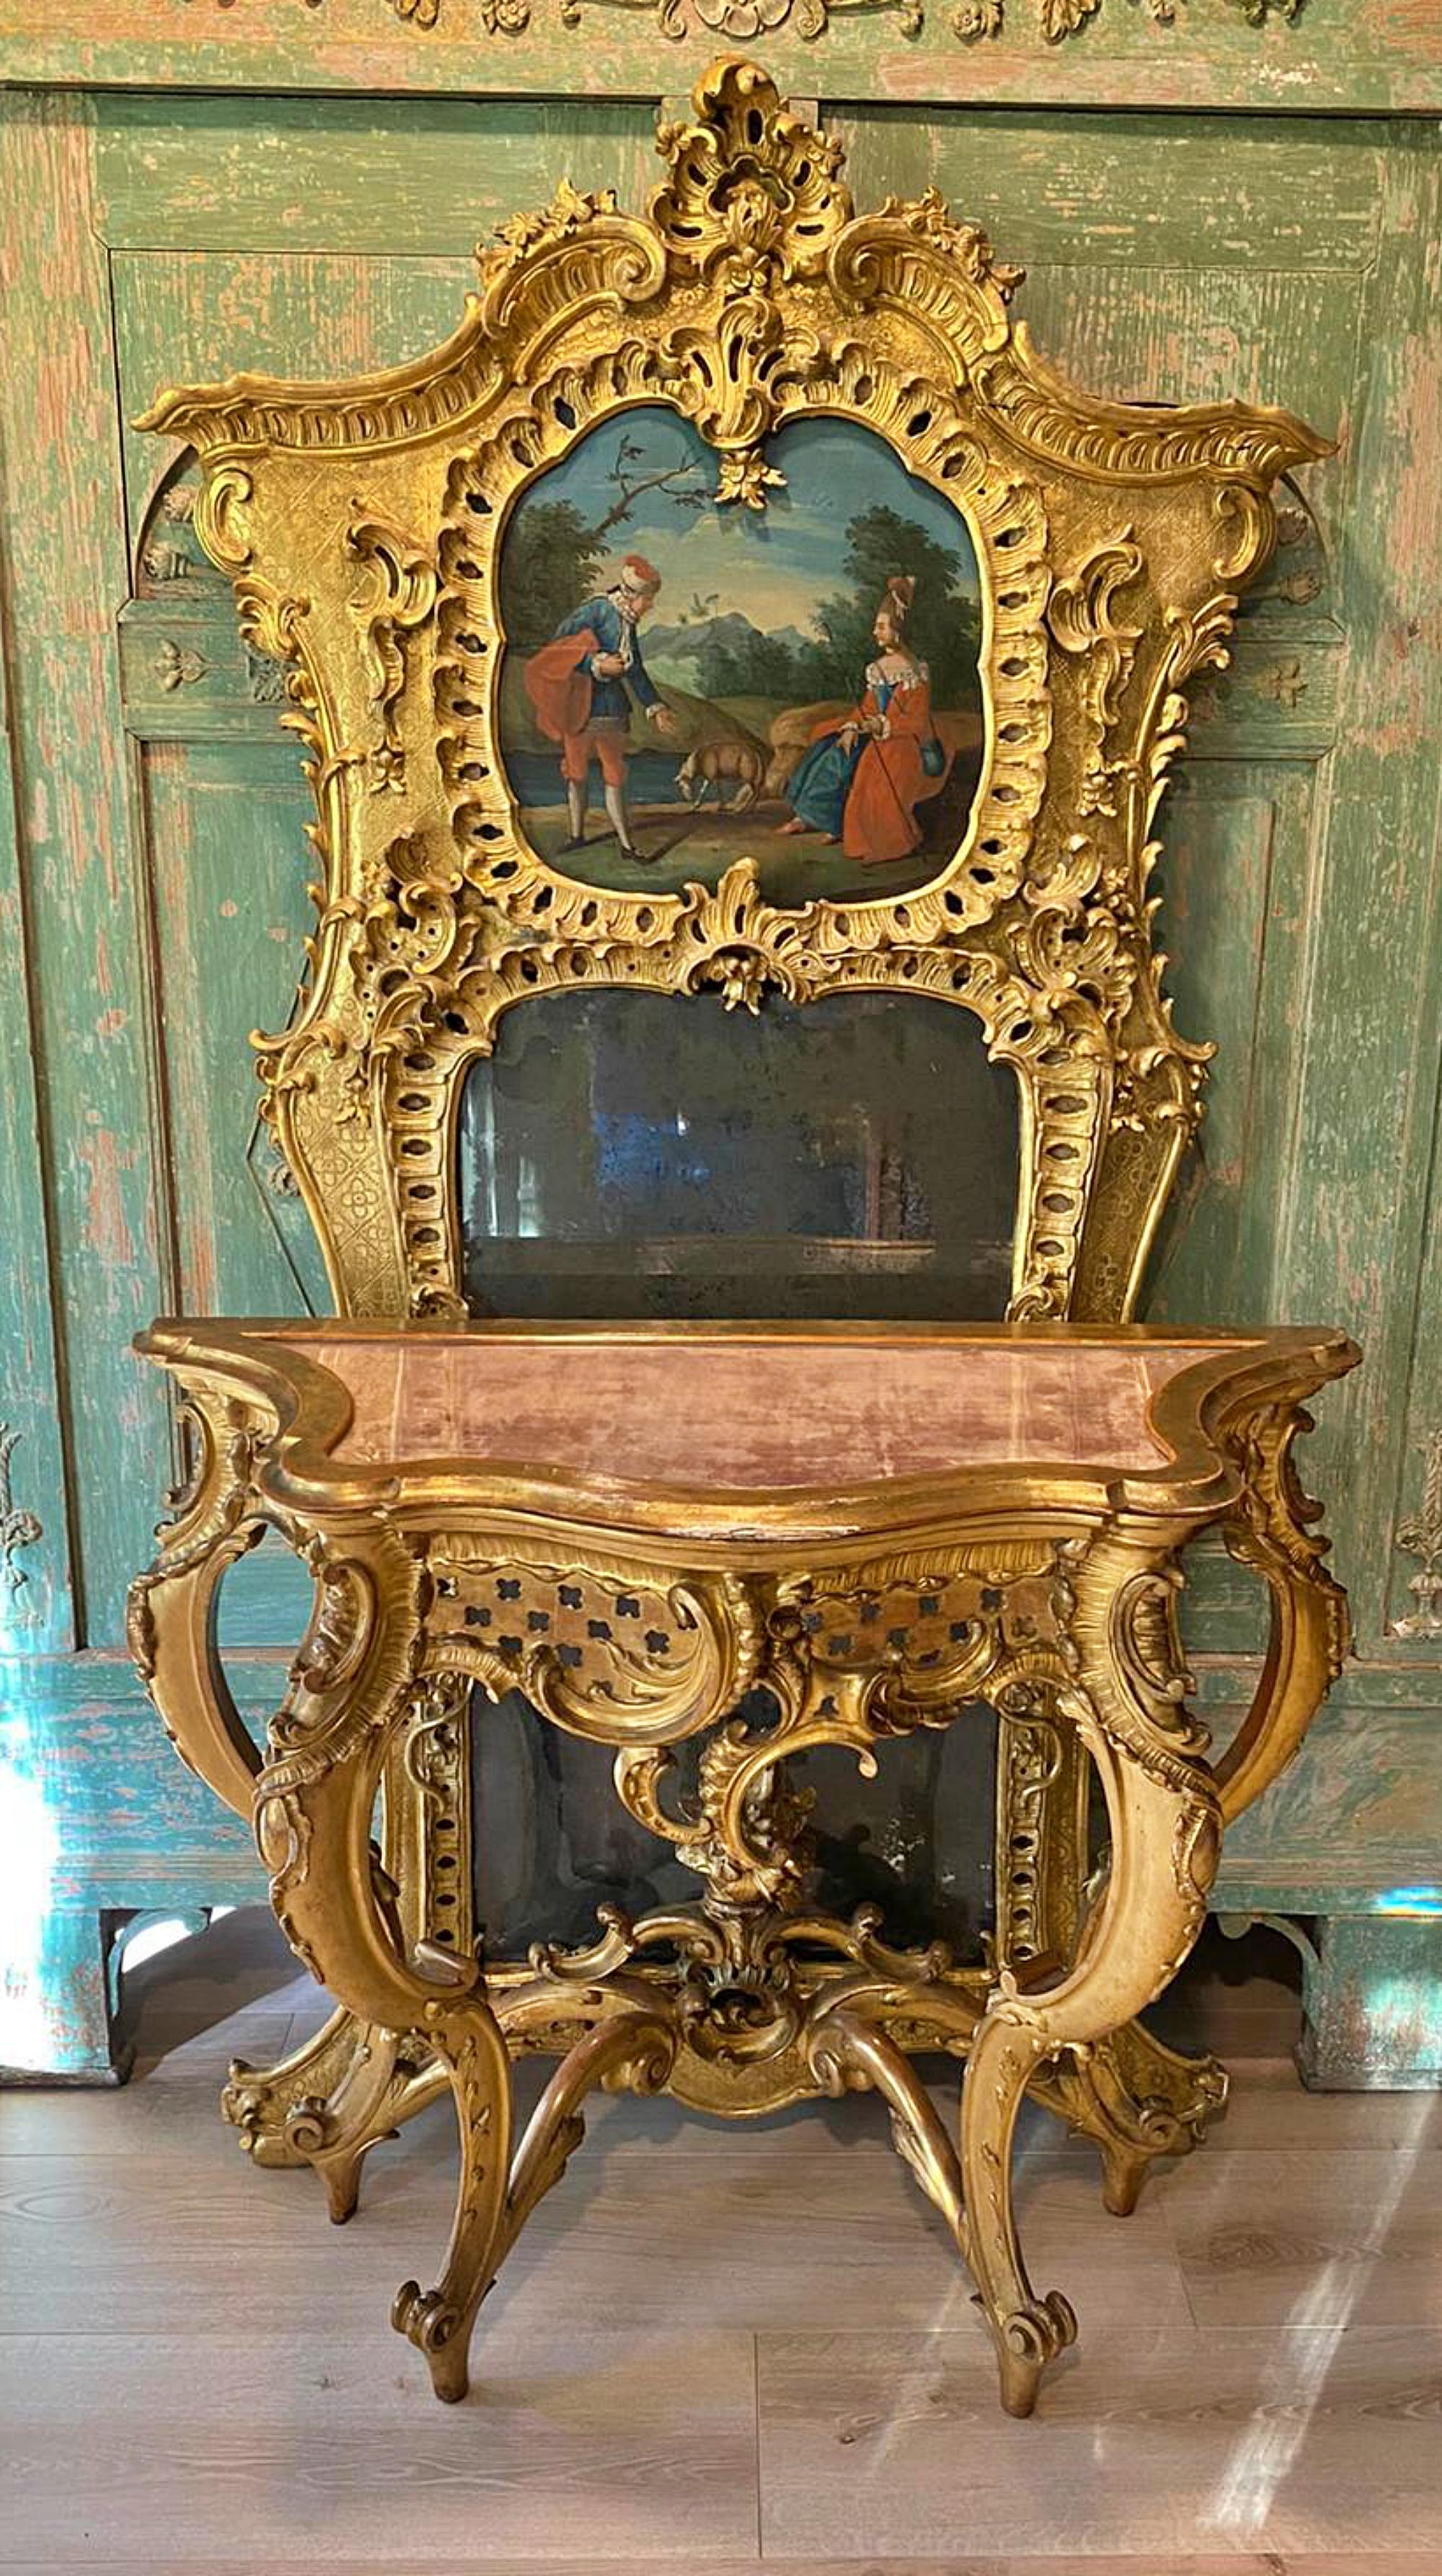 Wichtiger französischer Spiegel und Konsole von 1760/70 18.
aus massivem Holz geschnitzt und altvergoldet. 
Im oberen Teil handgemalte Ölmalerei mit einer epochentypischen Szenerie, imposanter Bekrönung, floralen Motiven, Voluten und Blattranken